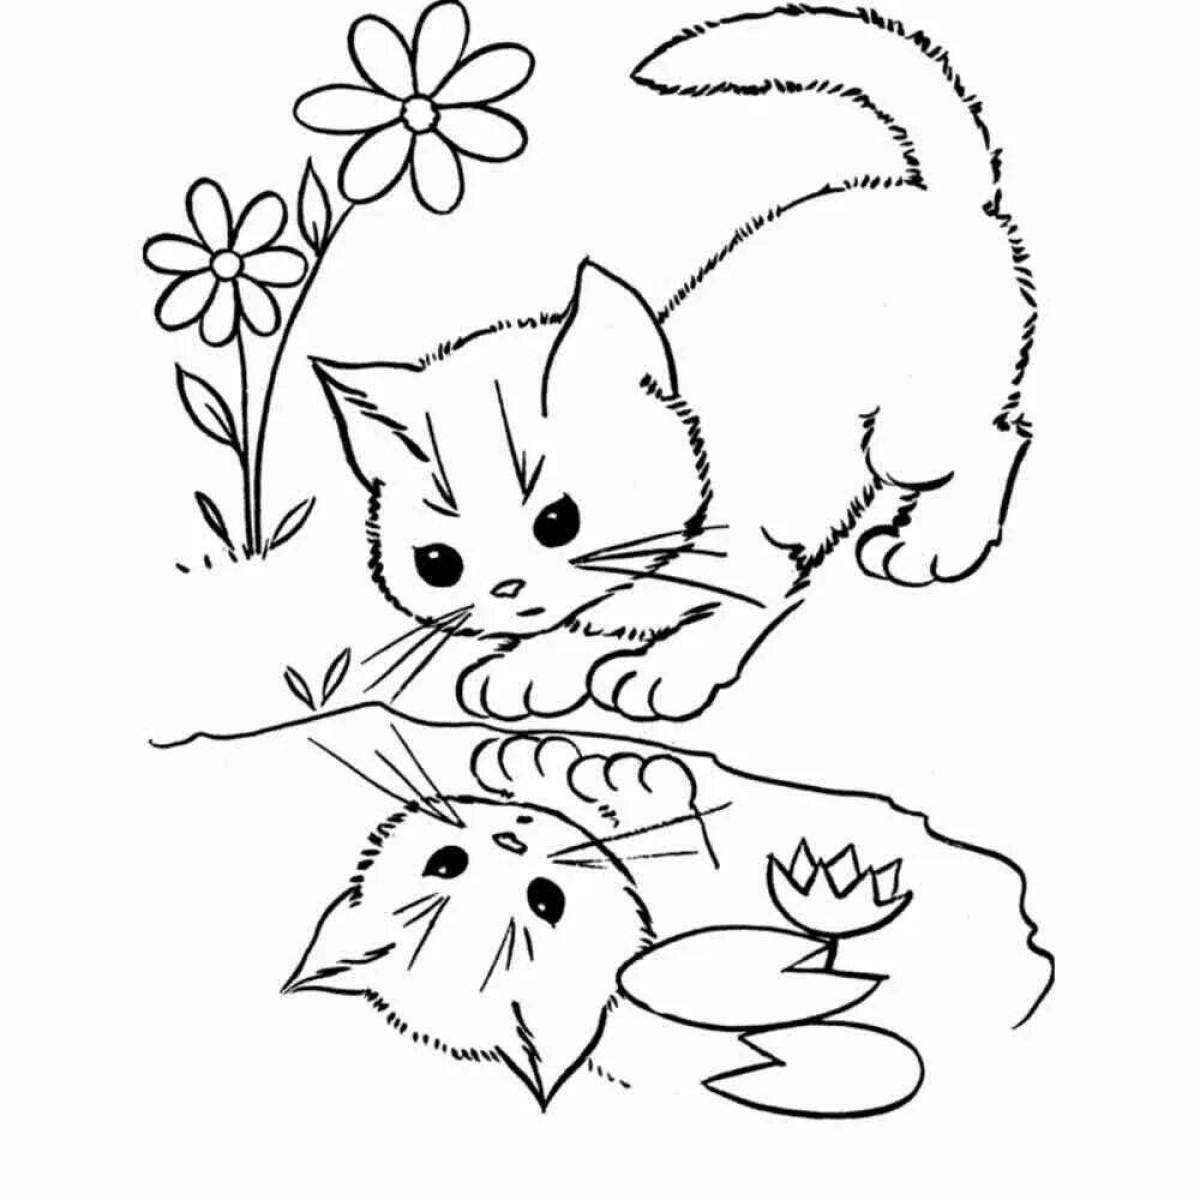 Fancy drawing of a kitten